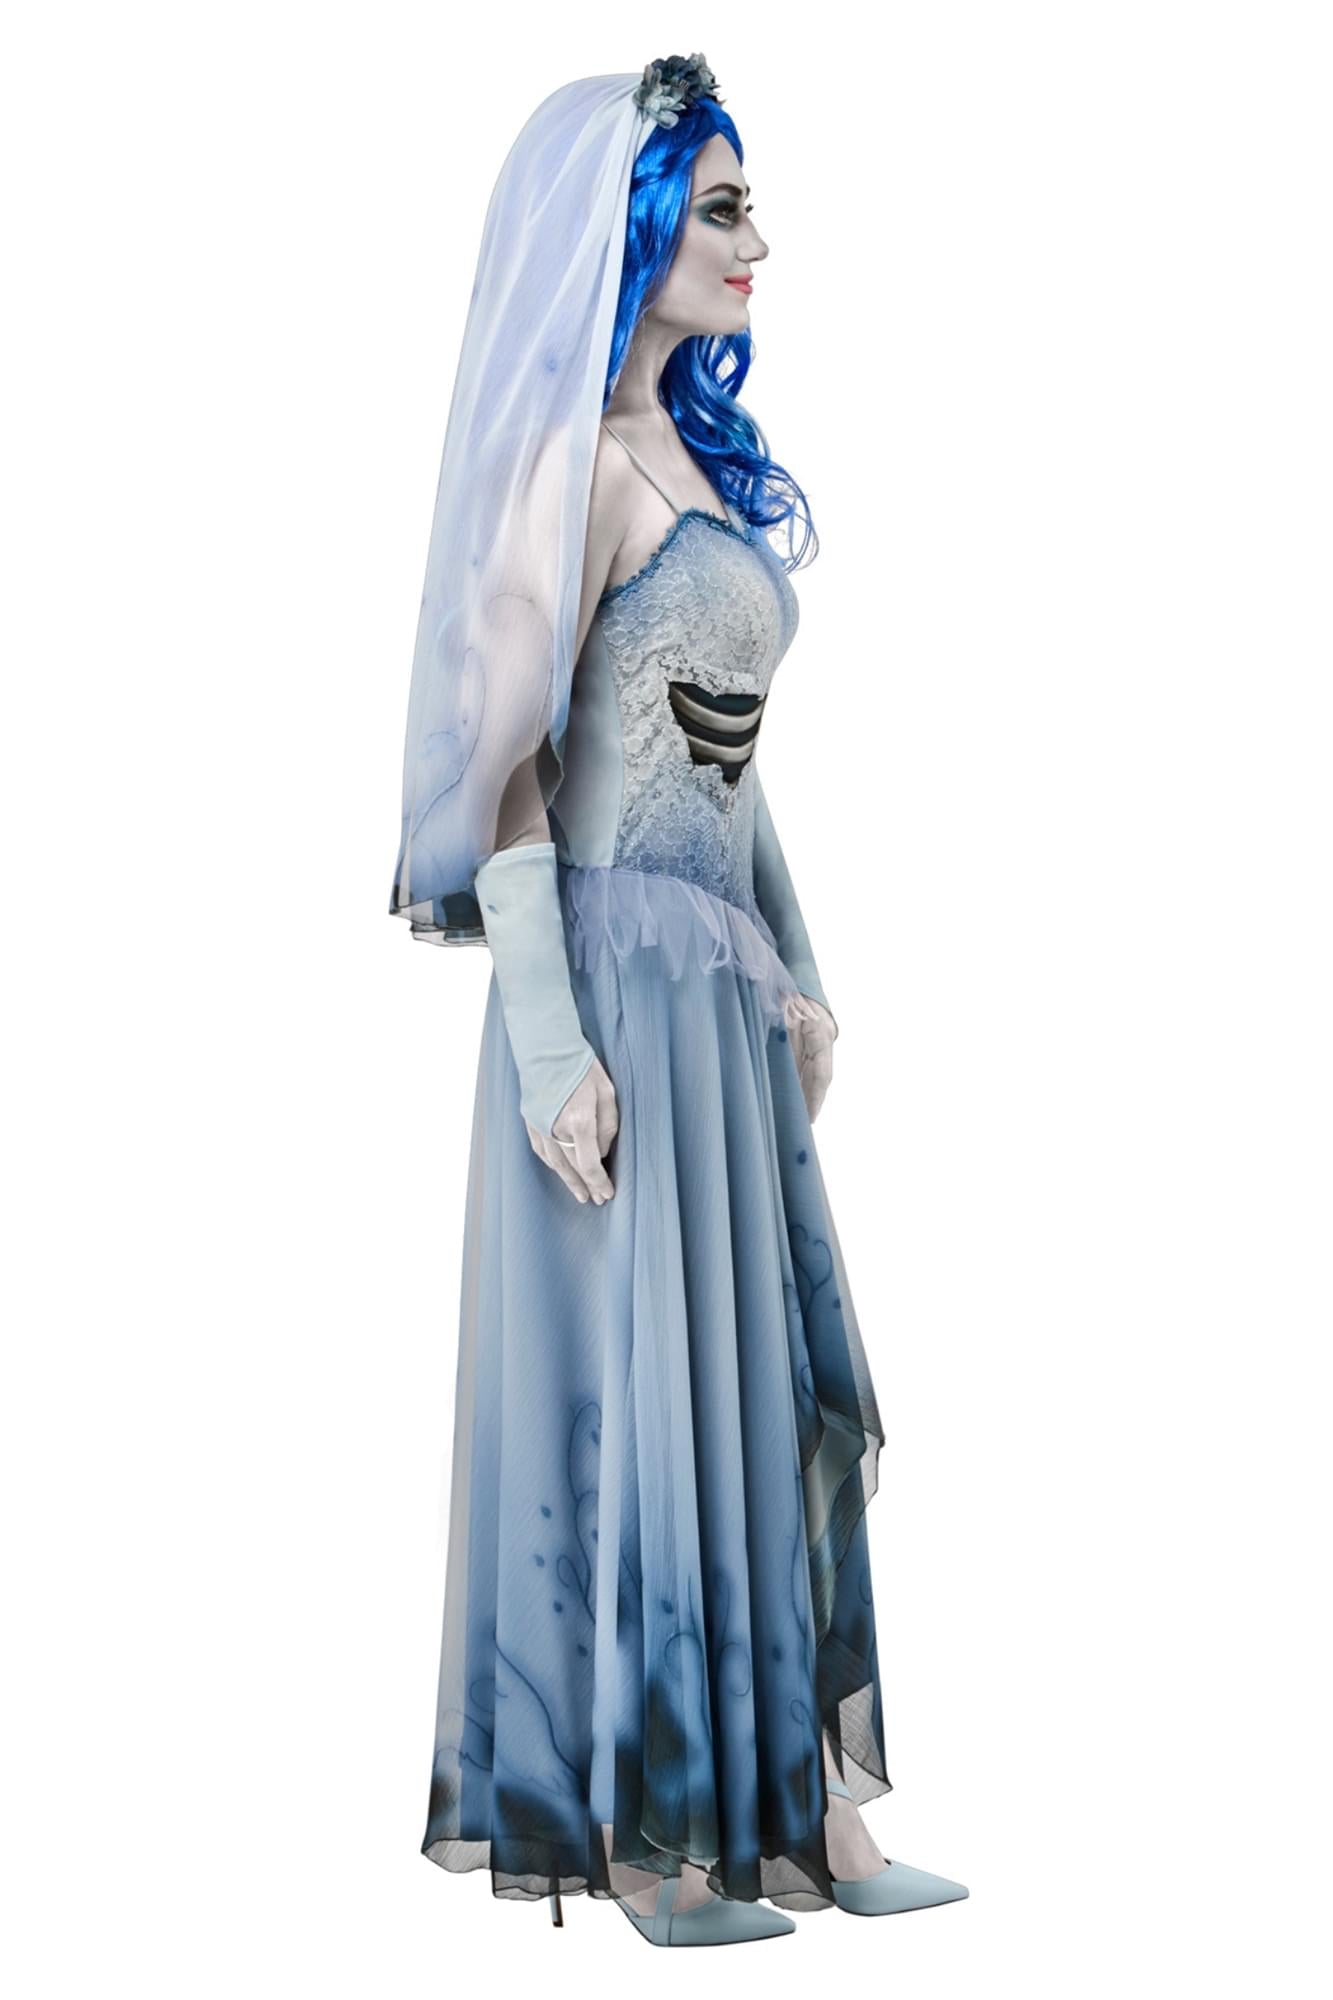 Corpse Bride Costume